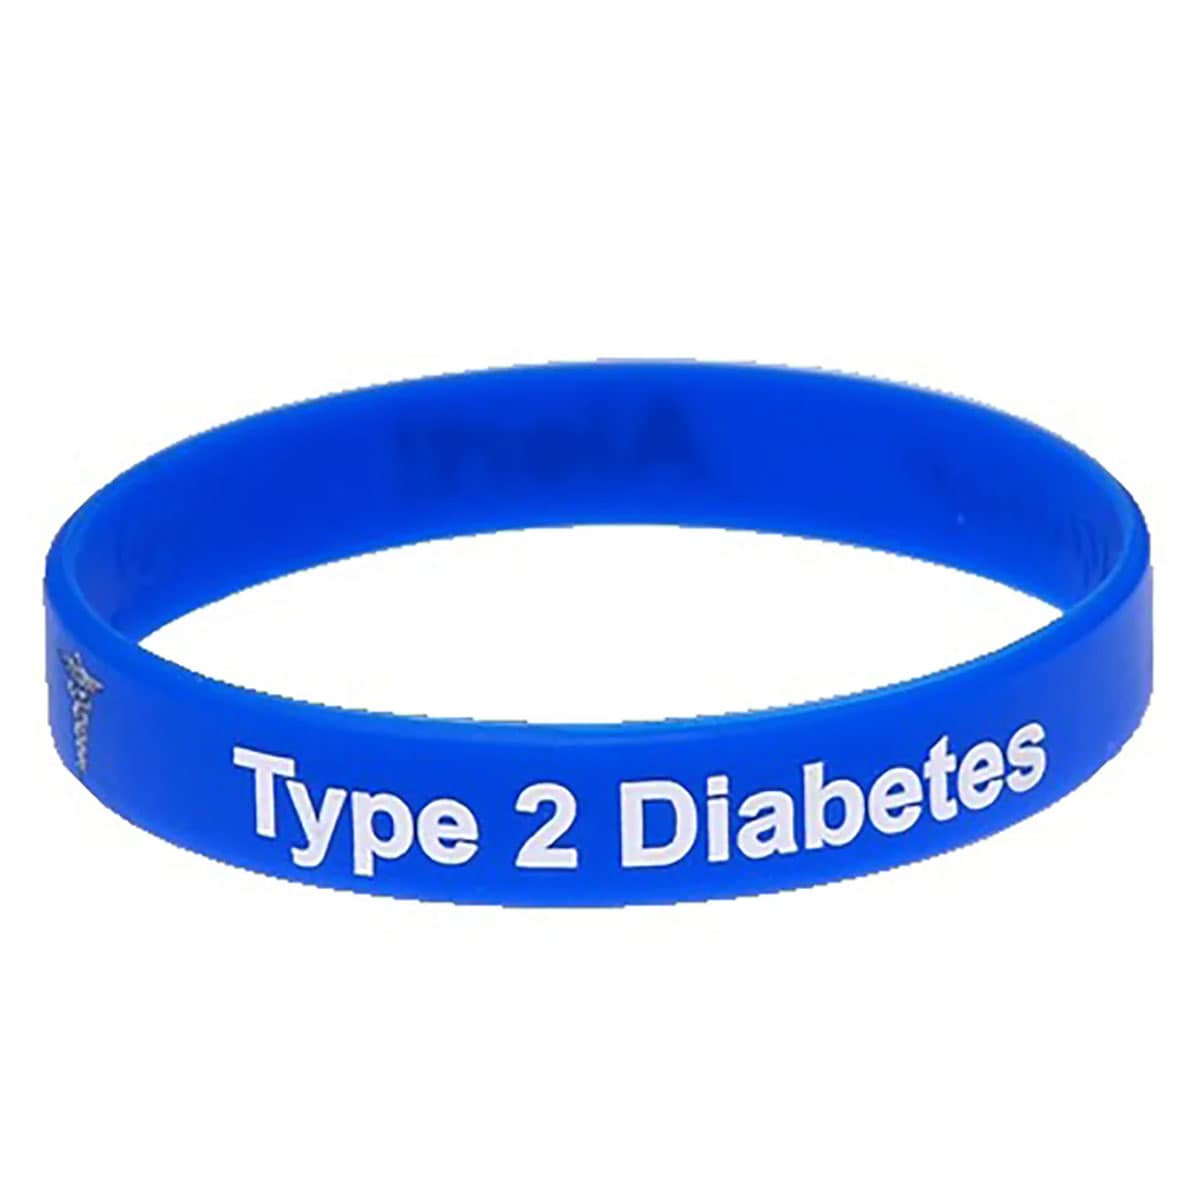 Mediband Type2 Diabetes Wristband Large